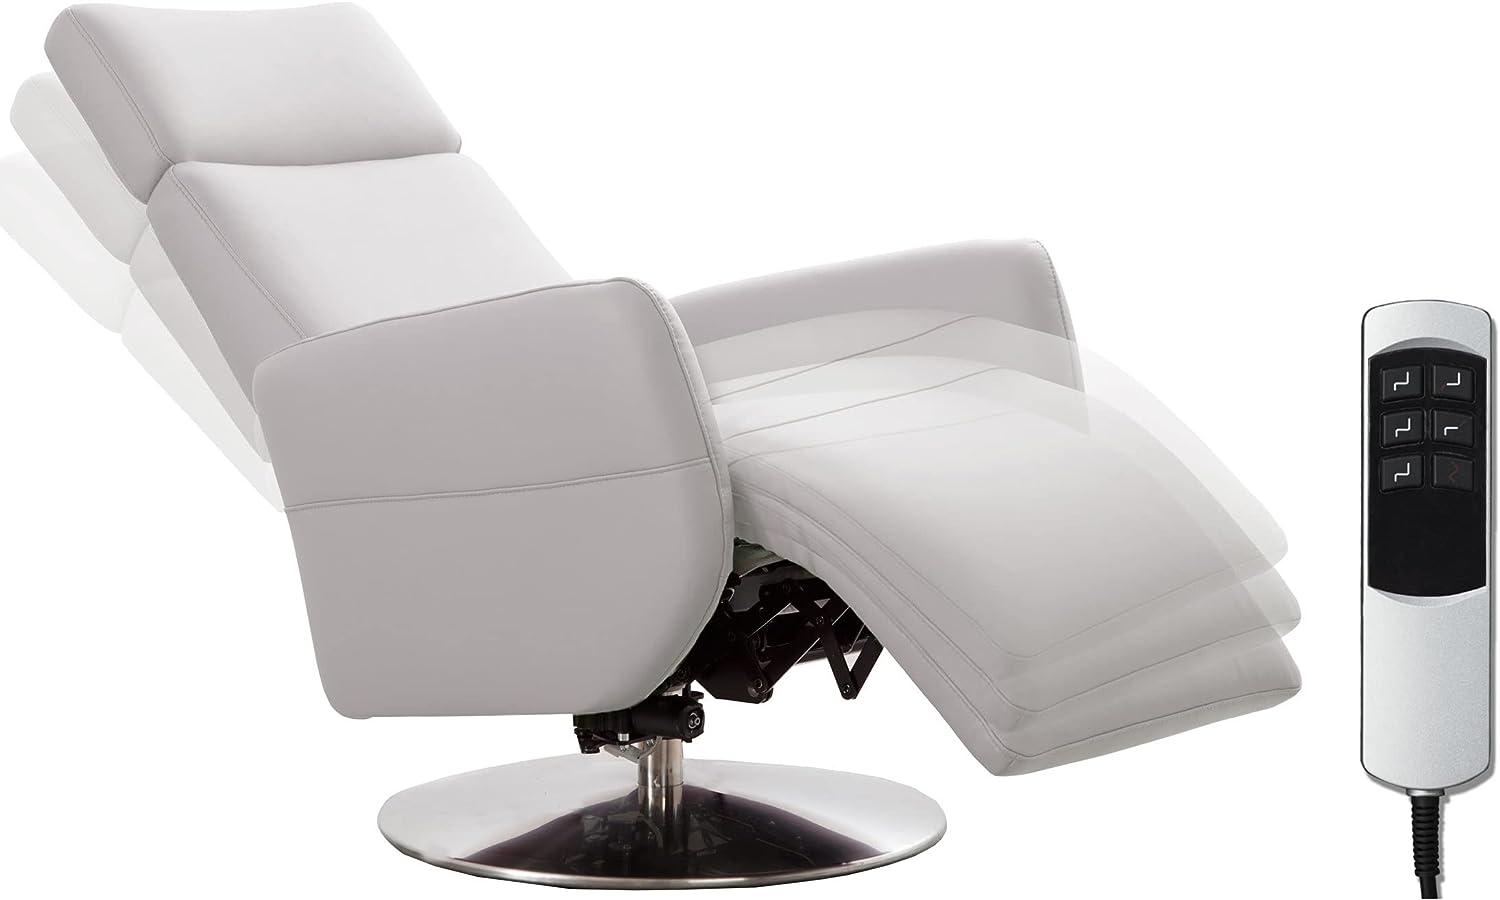 Cavadore TV-Sessel Cobra mit 2 E-Motoren / Elektrischer Fernsehsessel mit Fernbedienung / Relaxfunktion, Liegefunktion / Ergonomie M / Belastbar bis 130 kg / 71 x 110 x 82 / Echtleder Weiß Bild 1